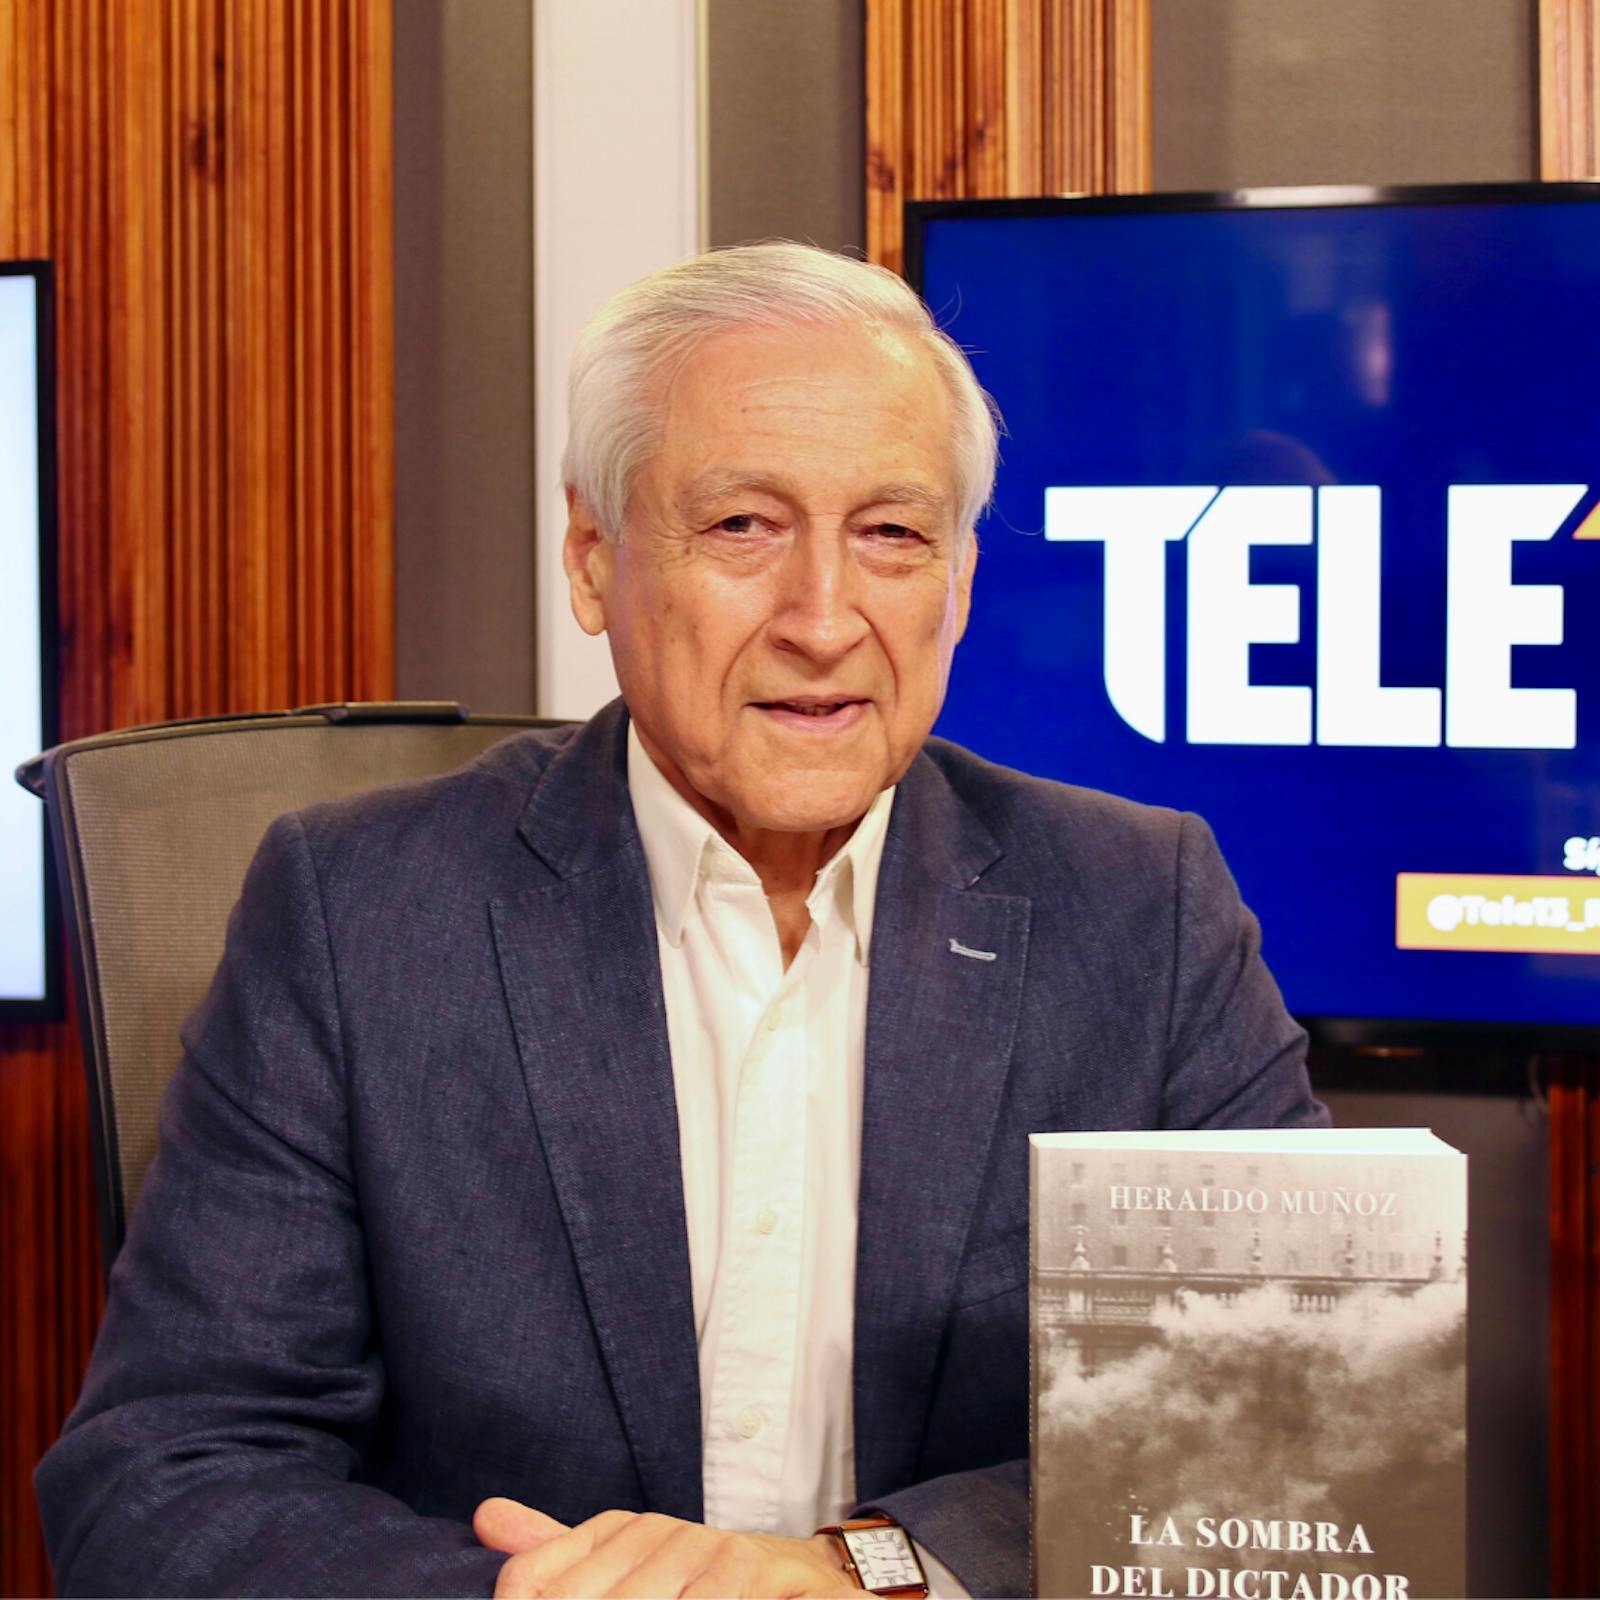 Heraldo Muñoz y su libro "La Sombra del Dictador": Un retrato del Chile de Pinochet